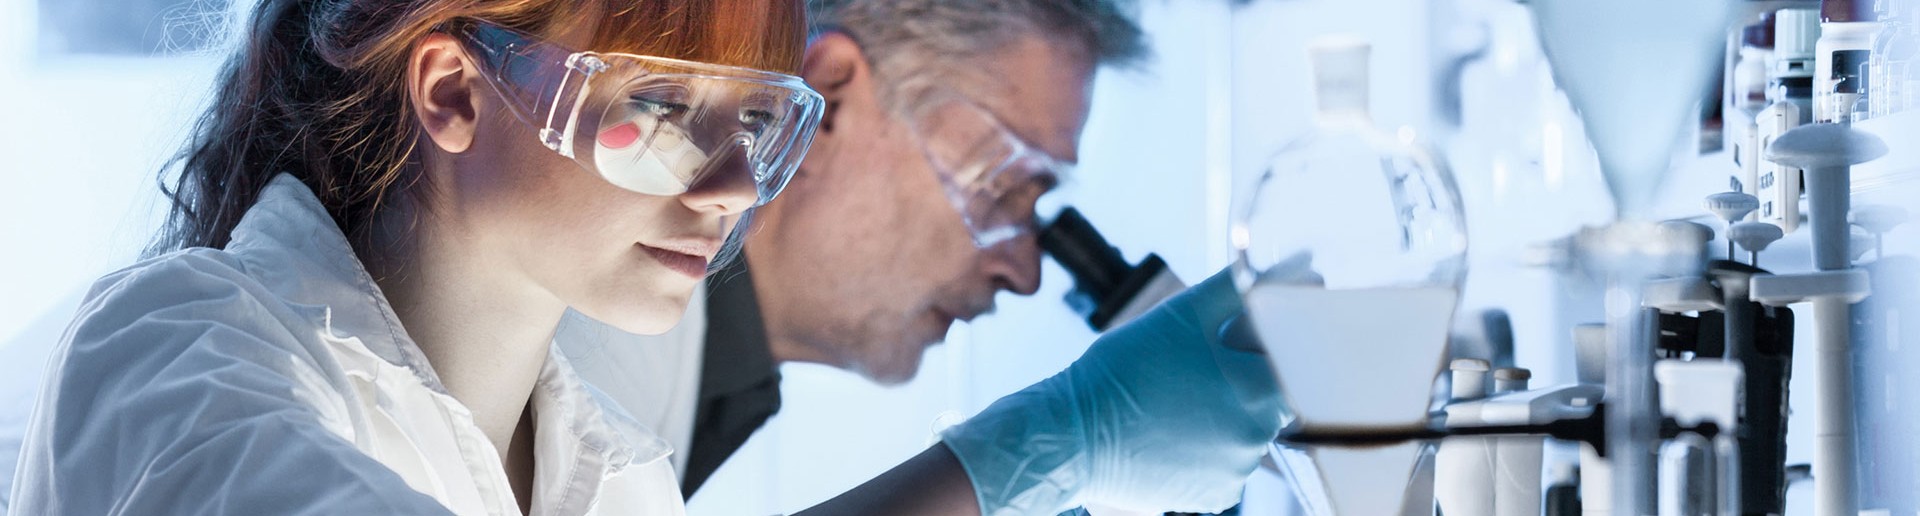 Químico de laboratorio sonriente con gafas y, en el fondo, un microscopio y tubos de ensayo.